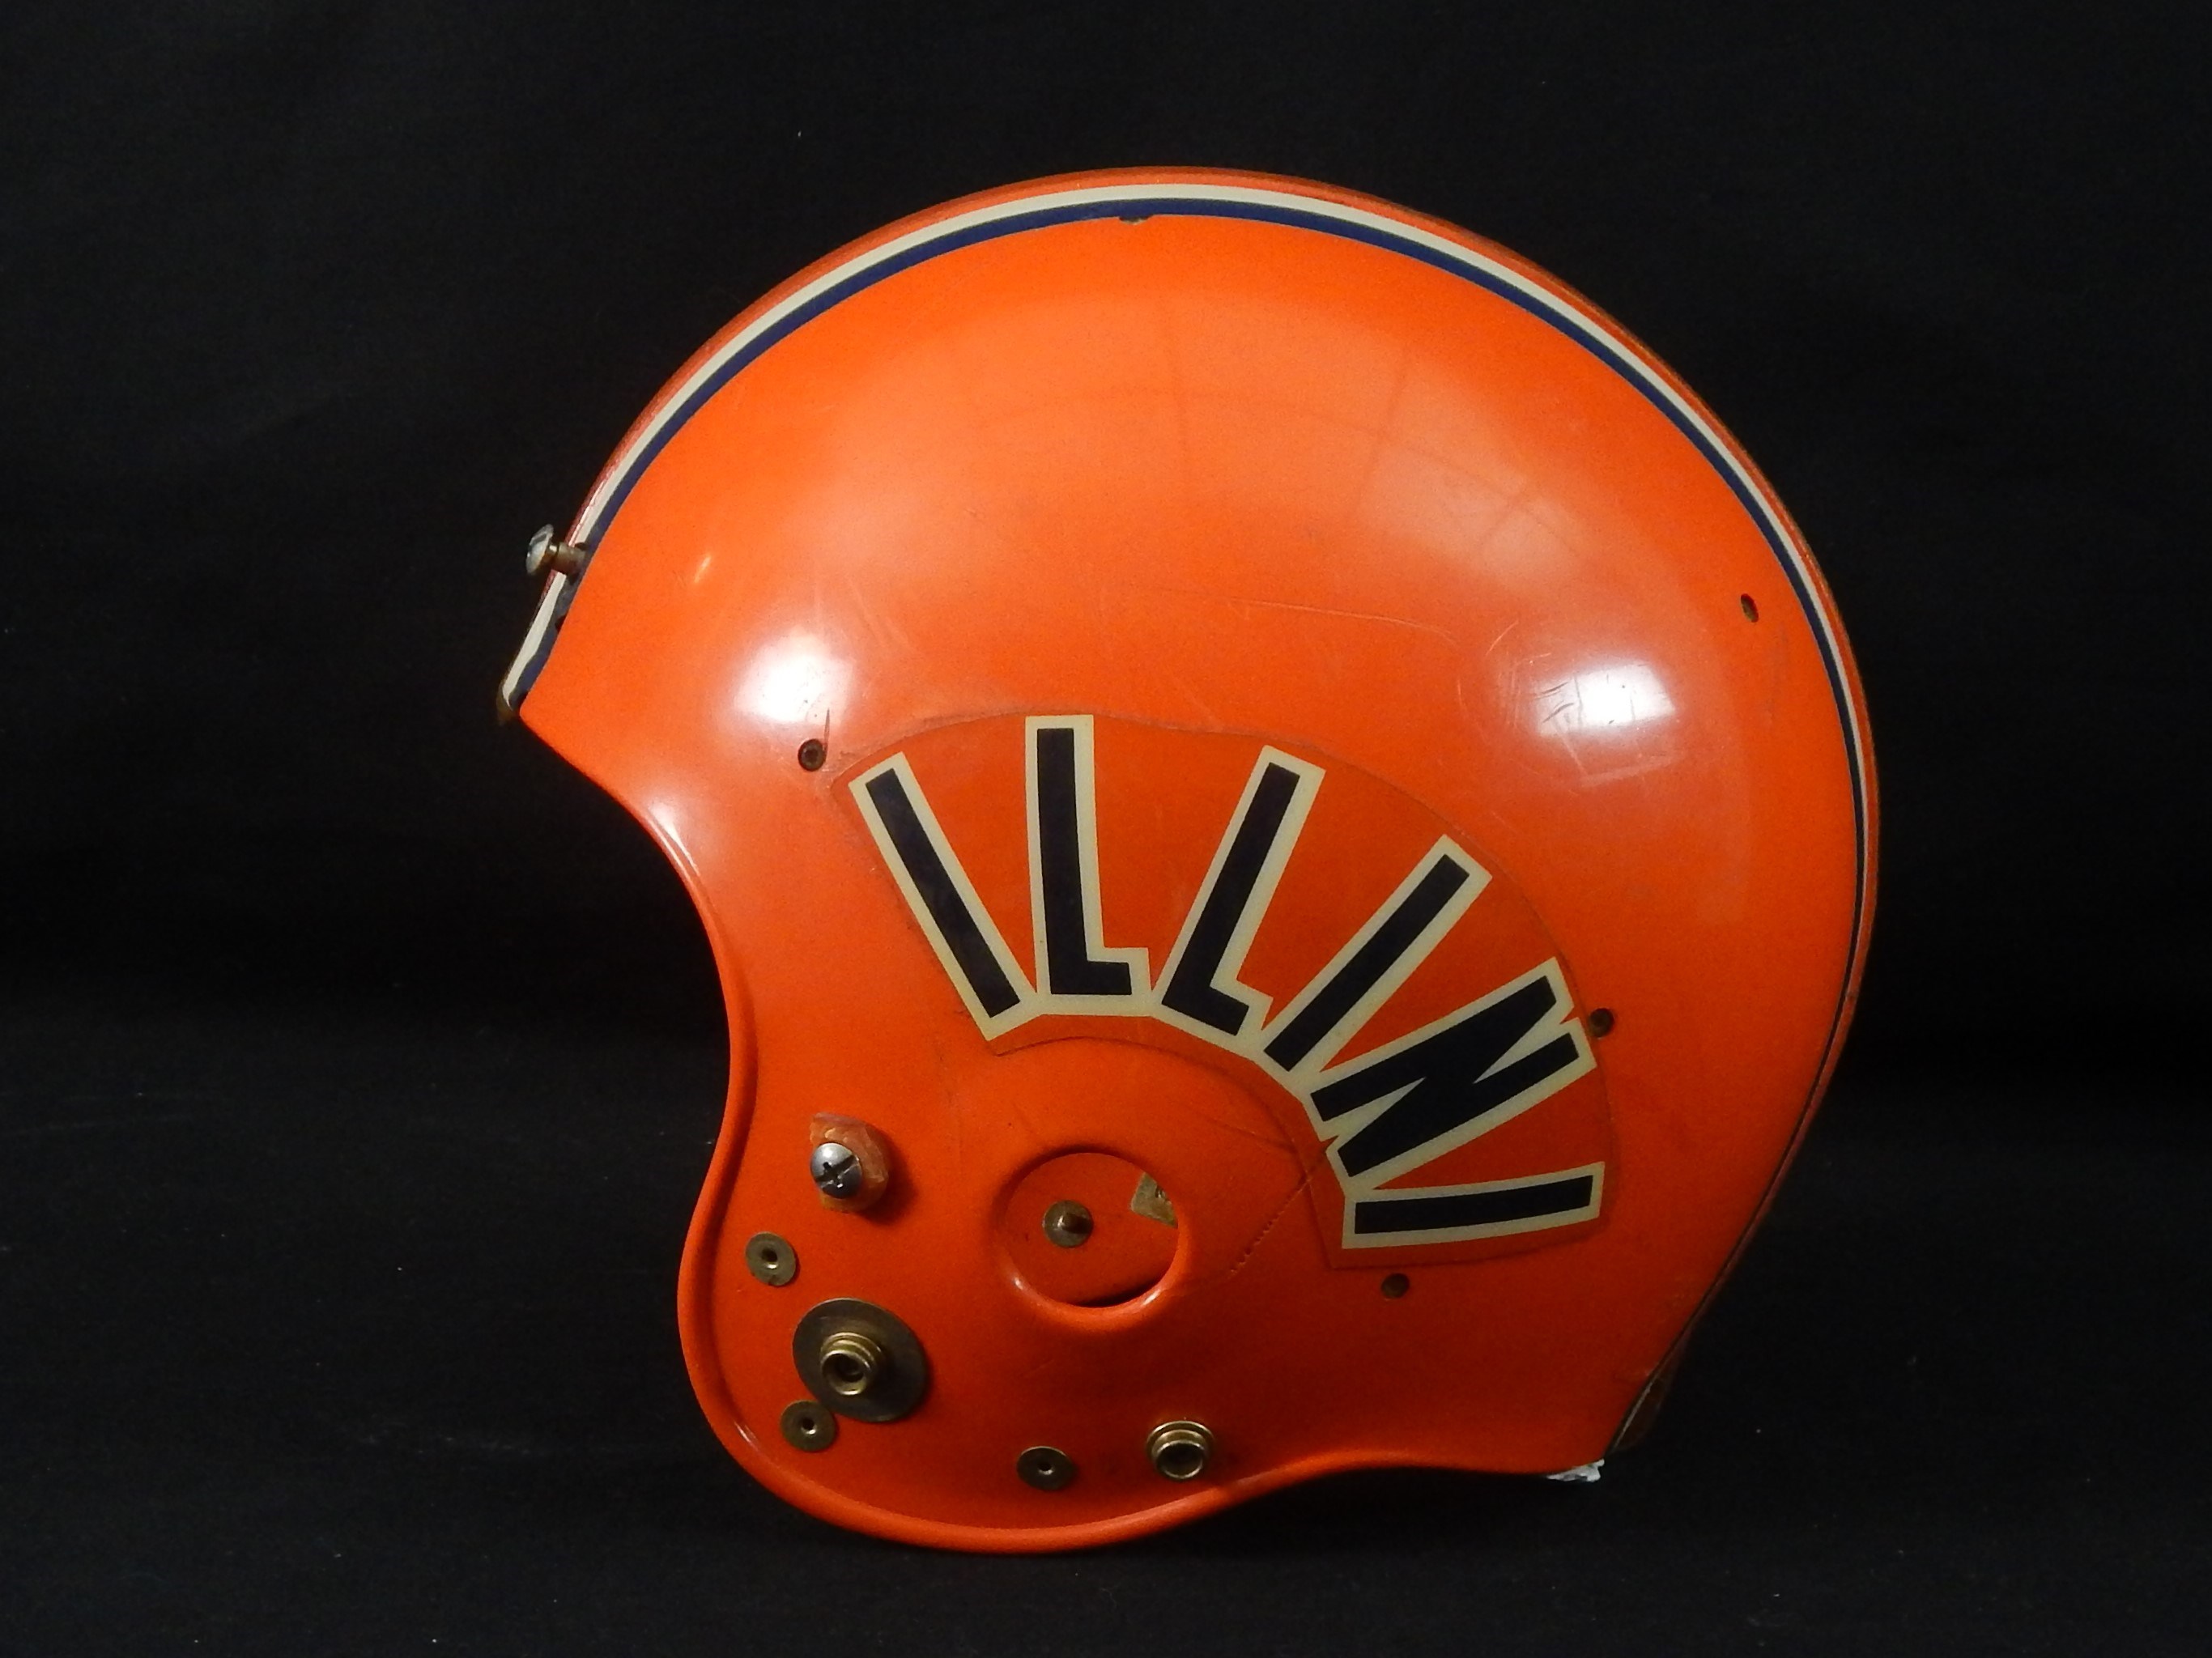 Game Used Football - 1980s Game Used University of Illinois Football Helmet